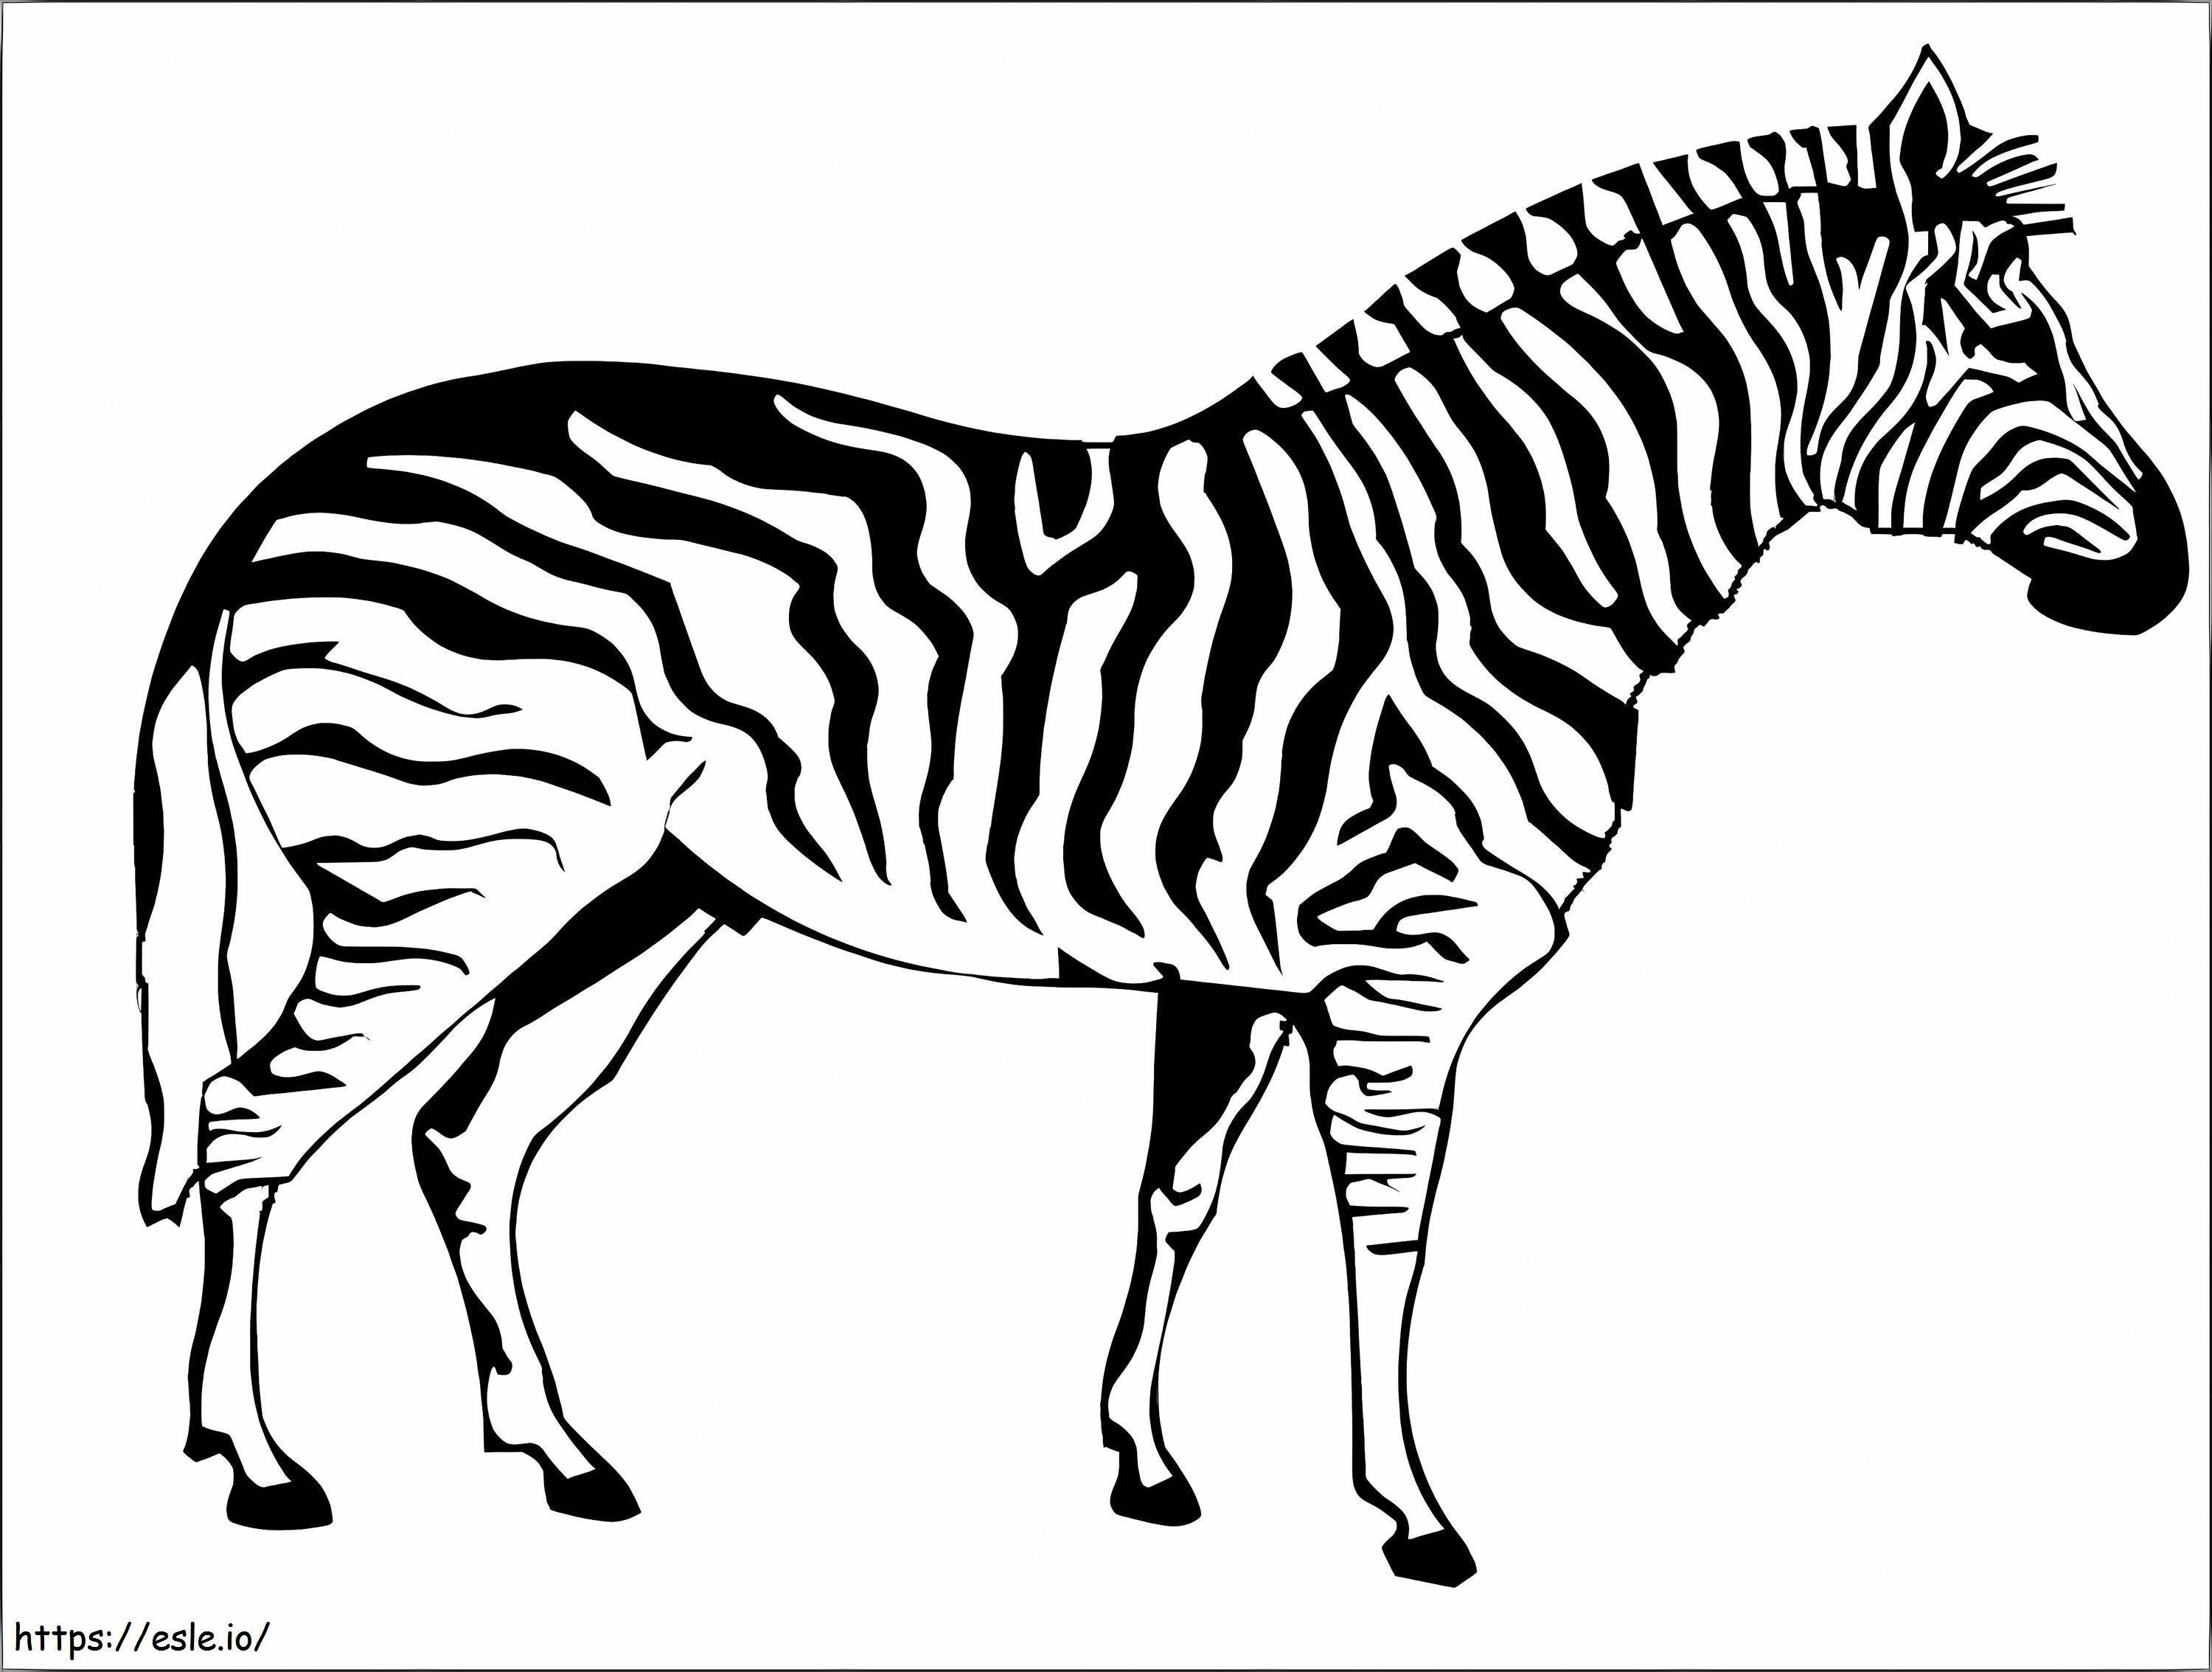 Zebra realistica da colorare